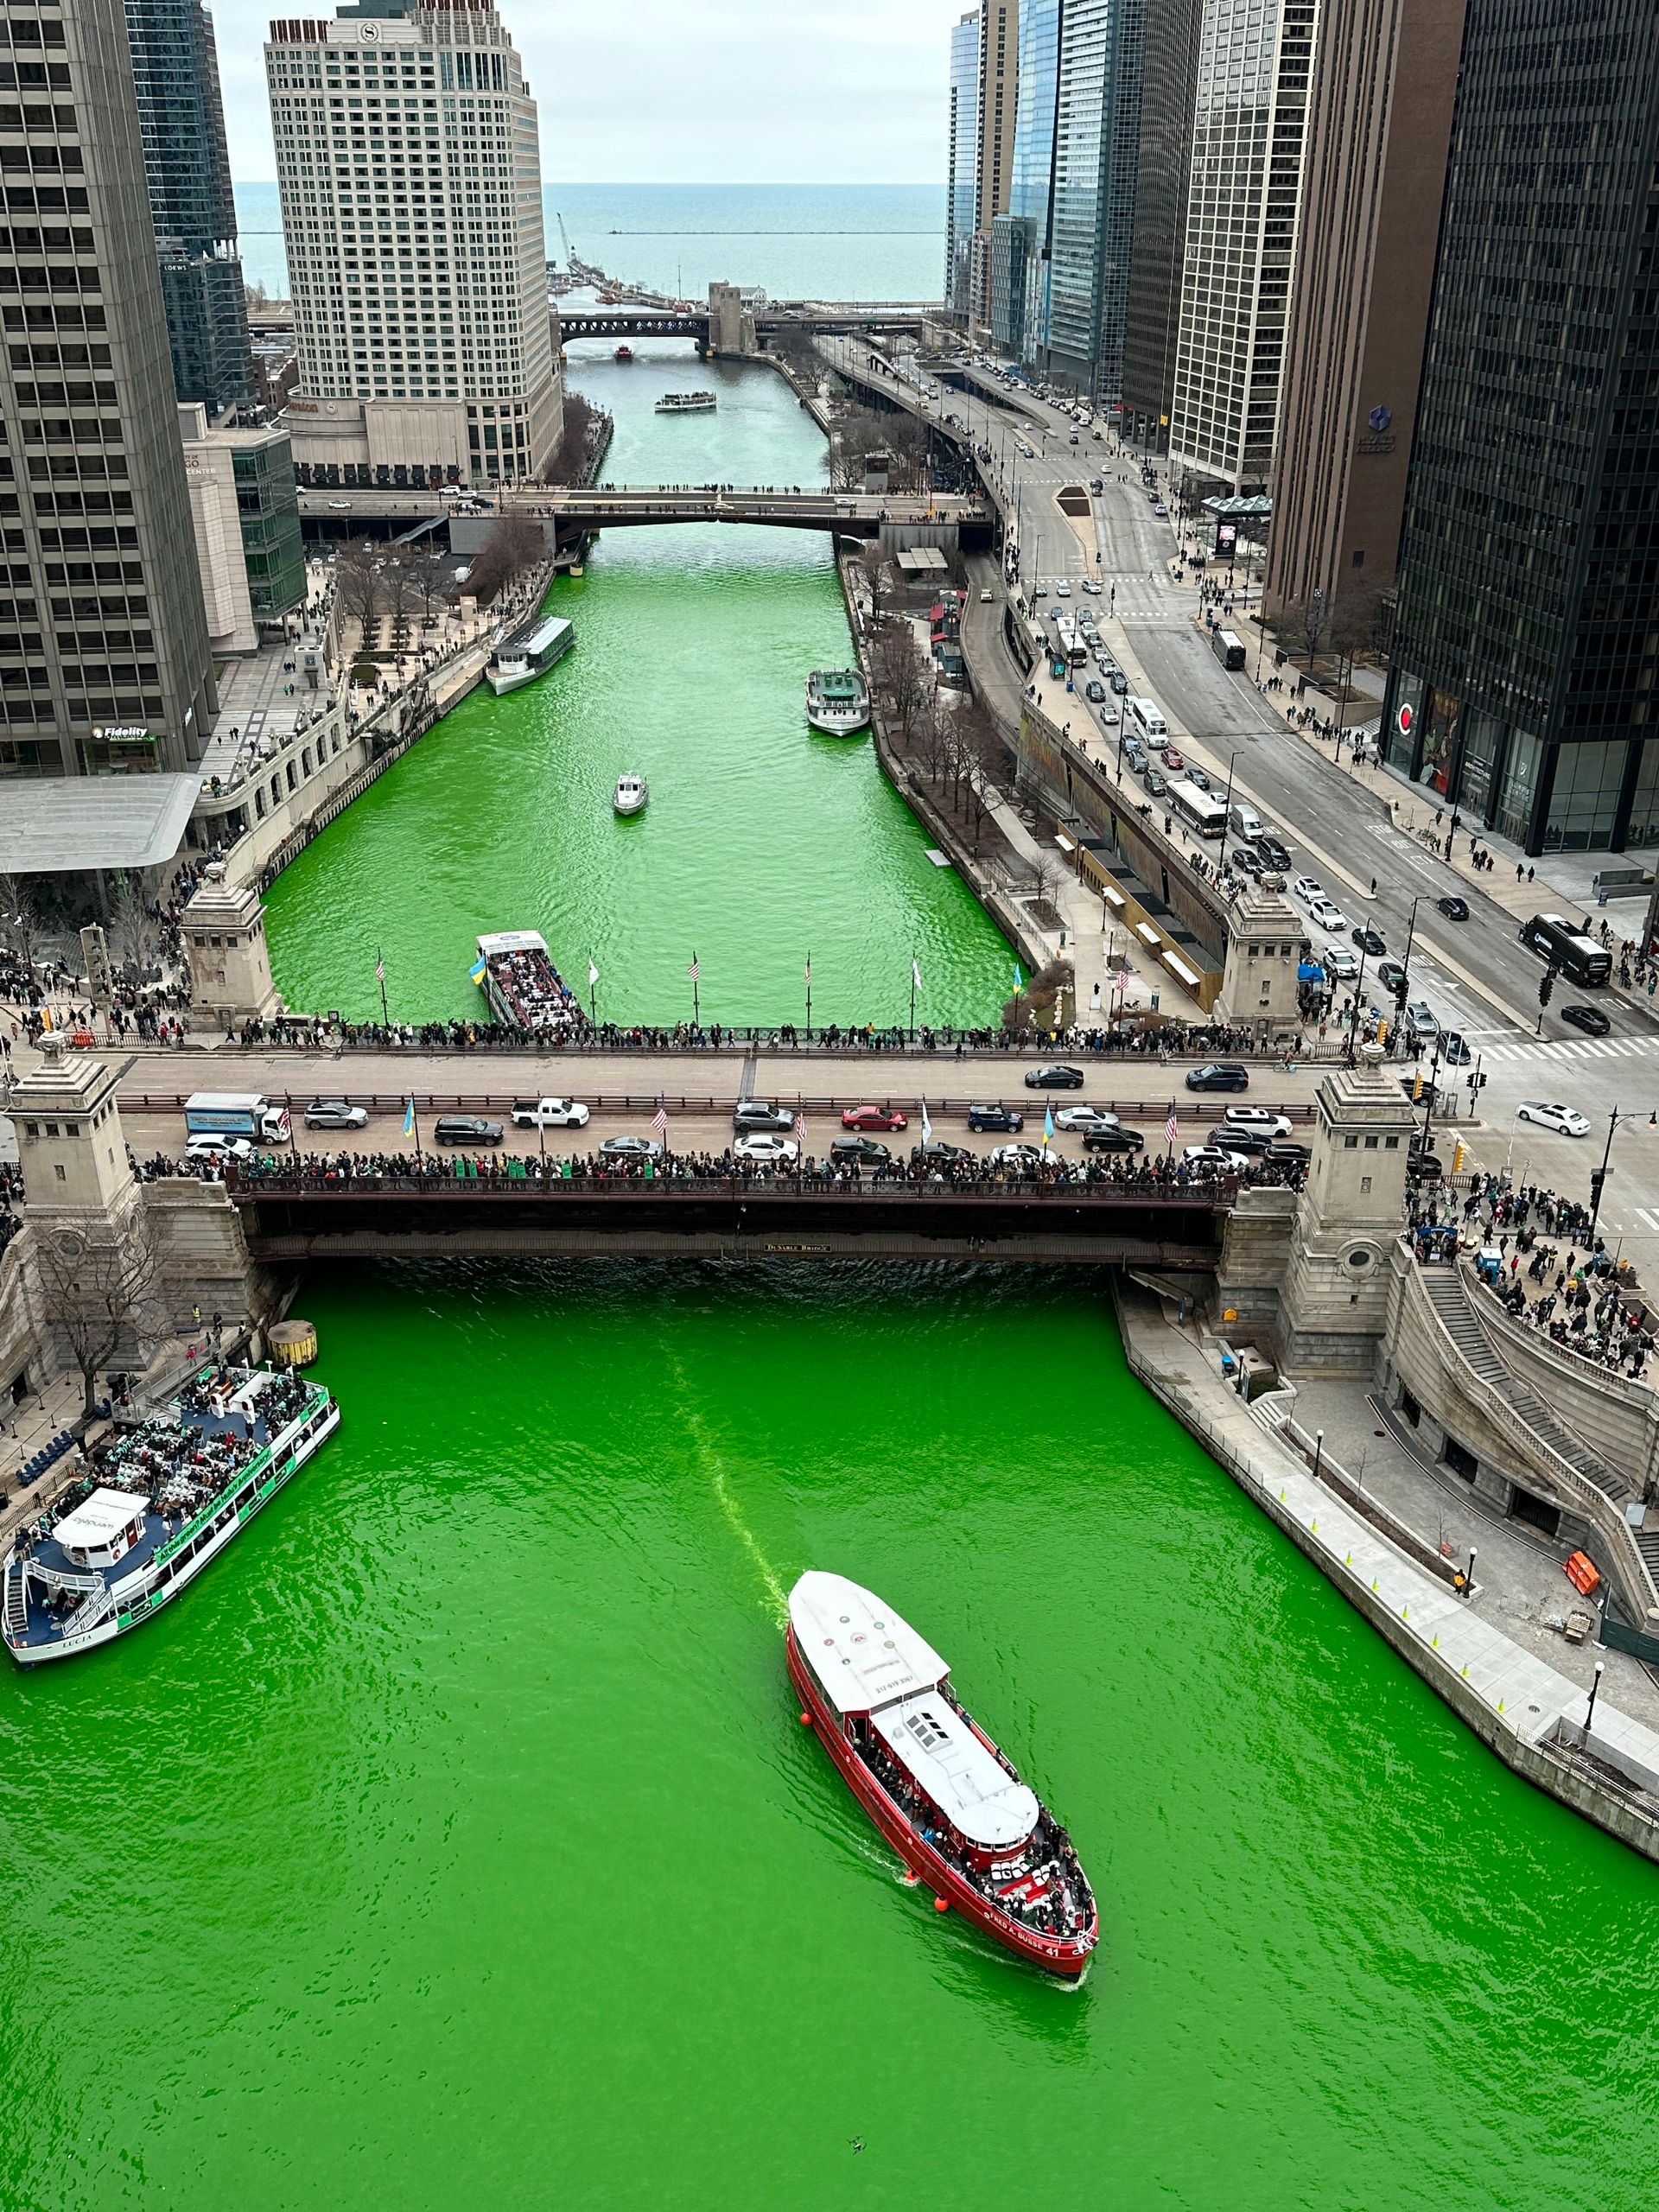 Mange mennesker står på en bro og kikker ned på en elv som er knallgrønn, og hvor noen båter kjører nedover, og elven er omgitt at høye bygninger.